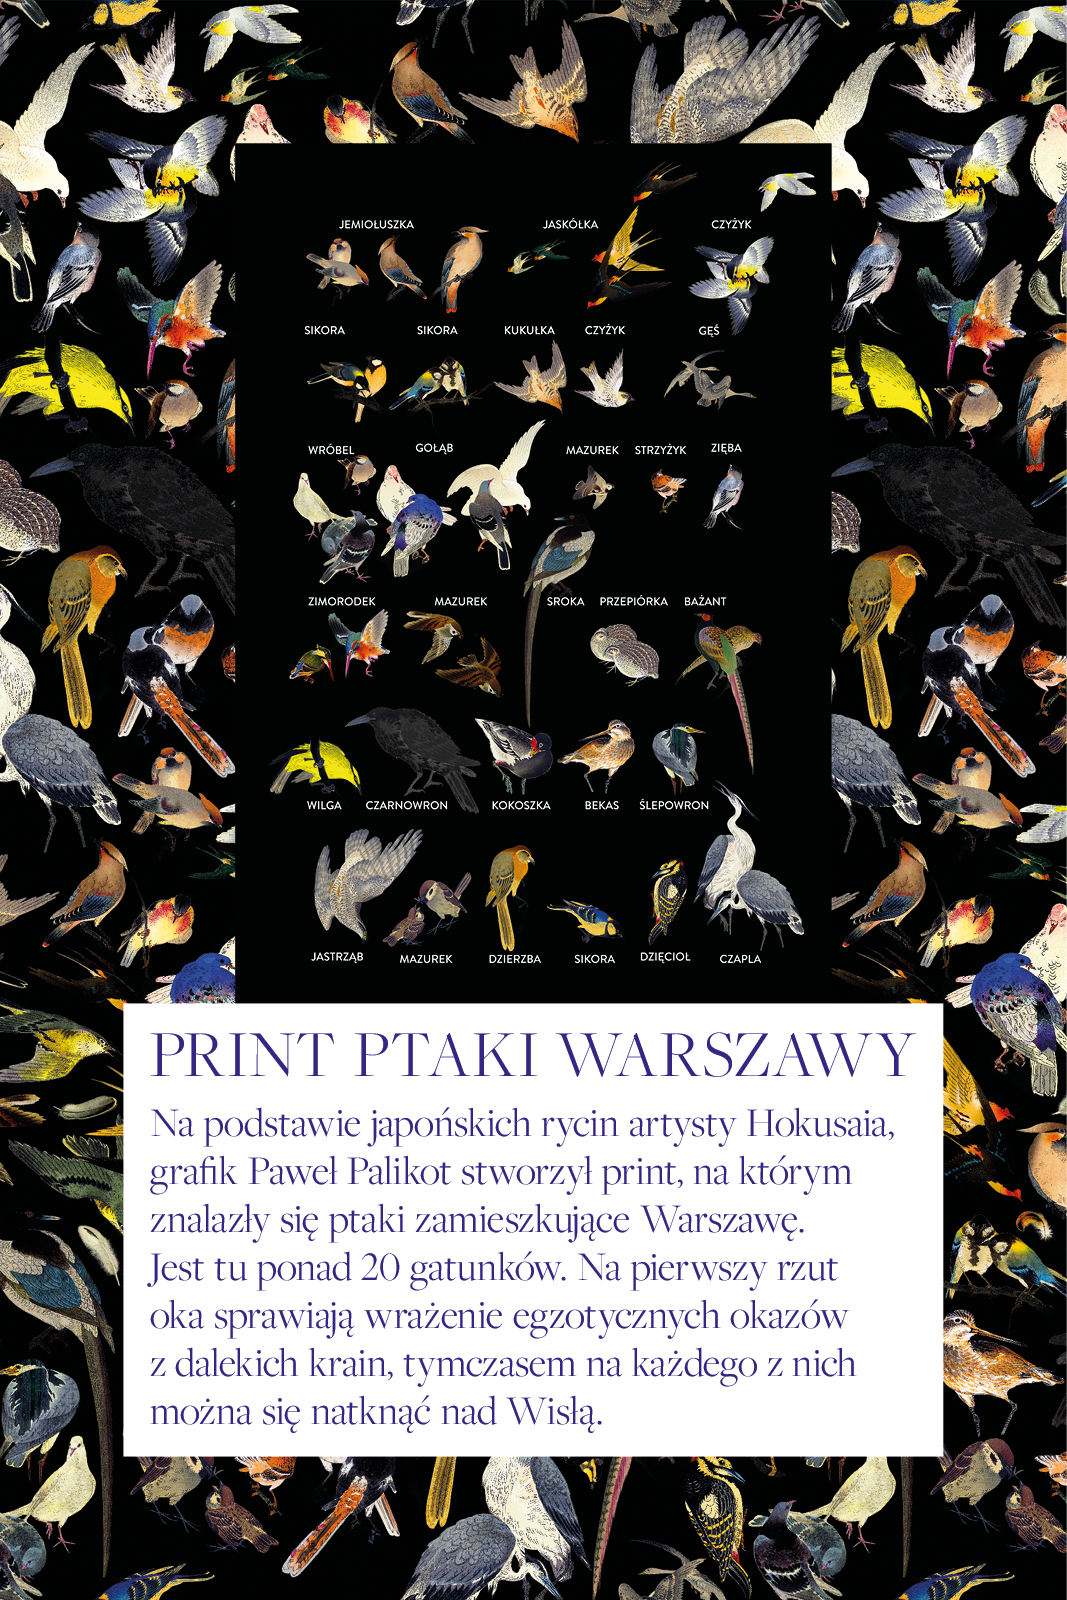 CAPRI birds of Warsaw print